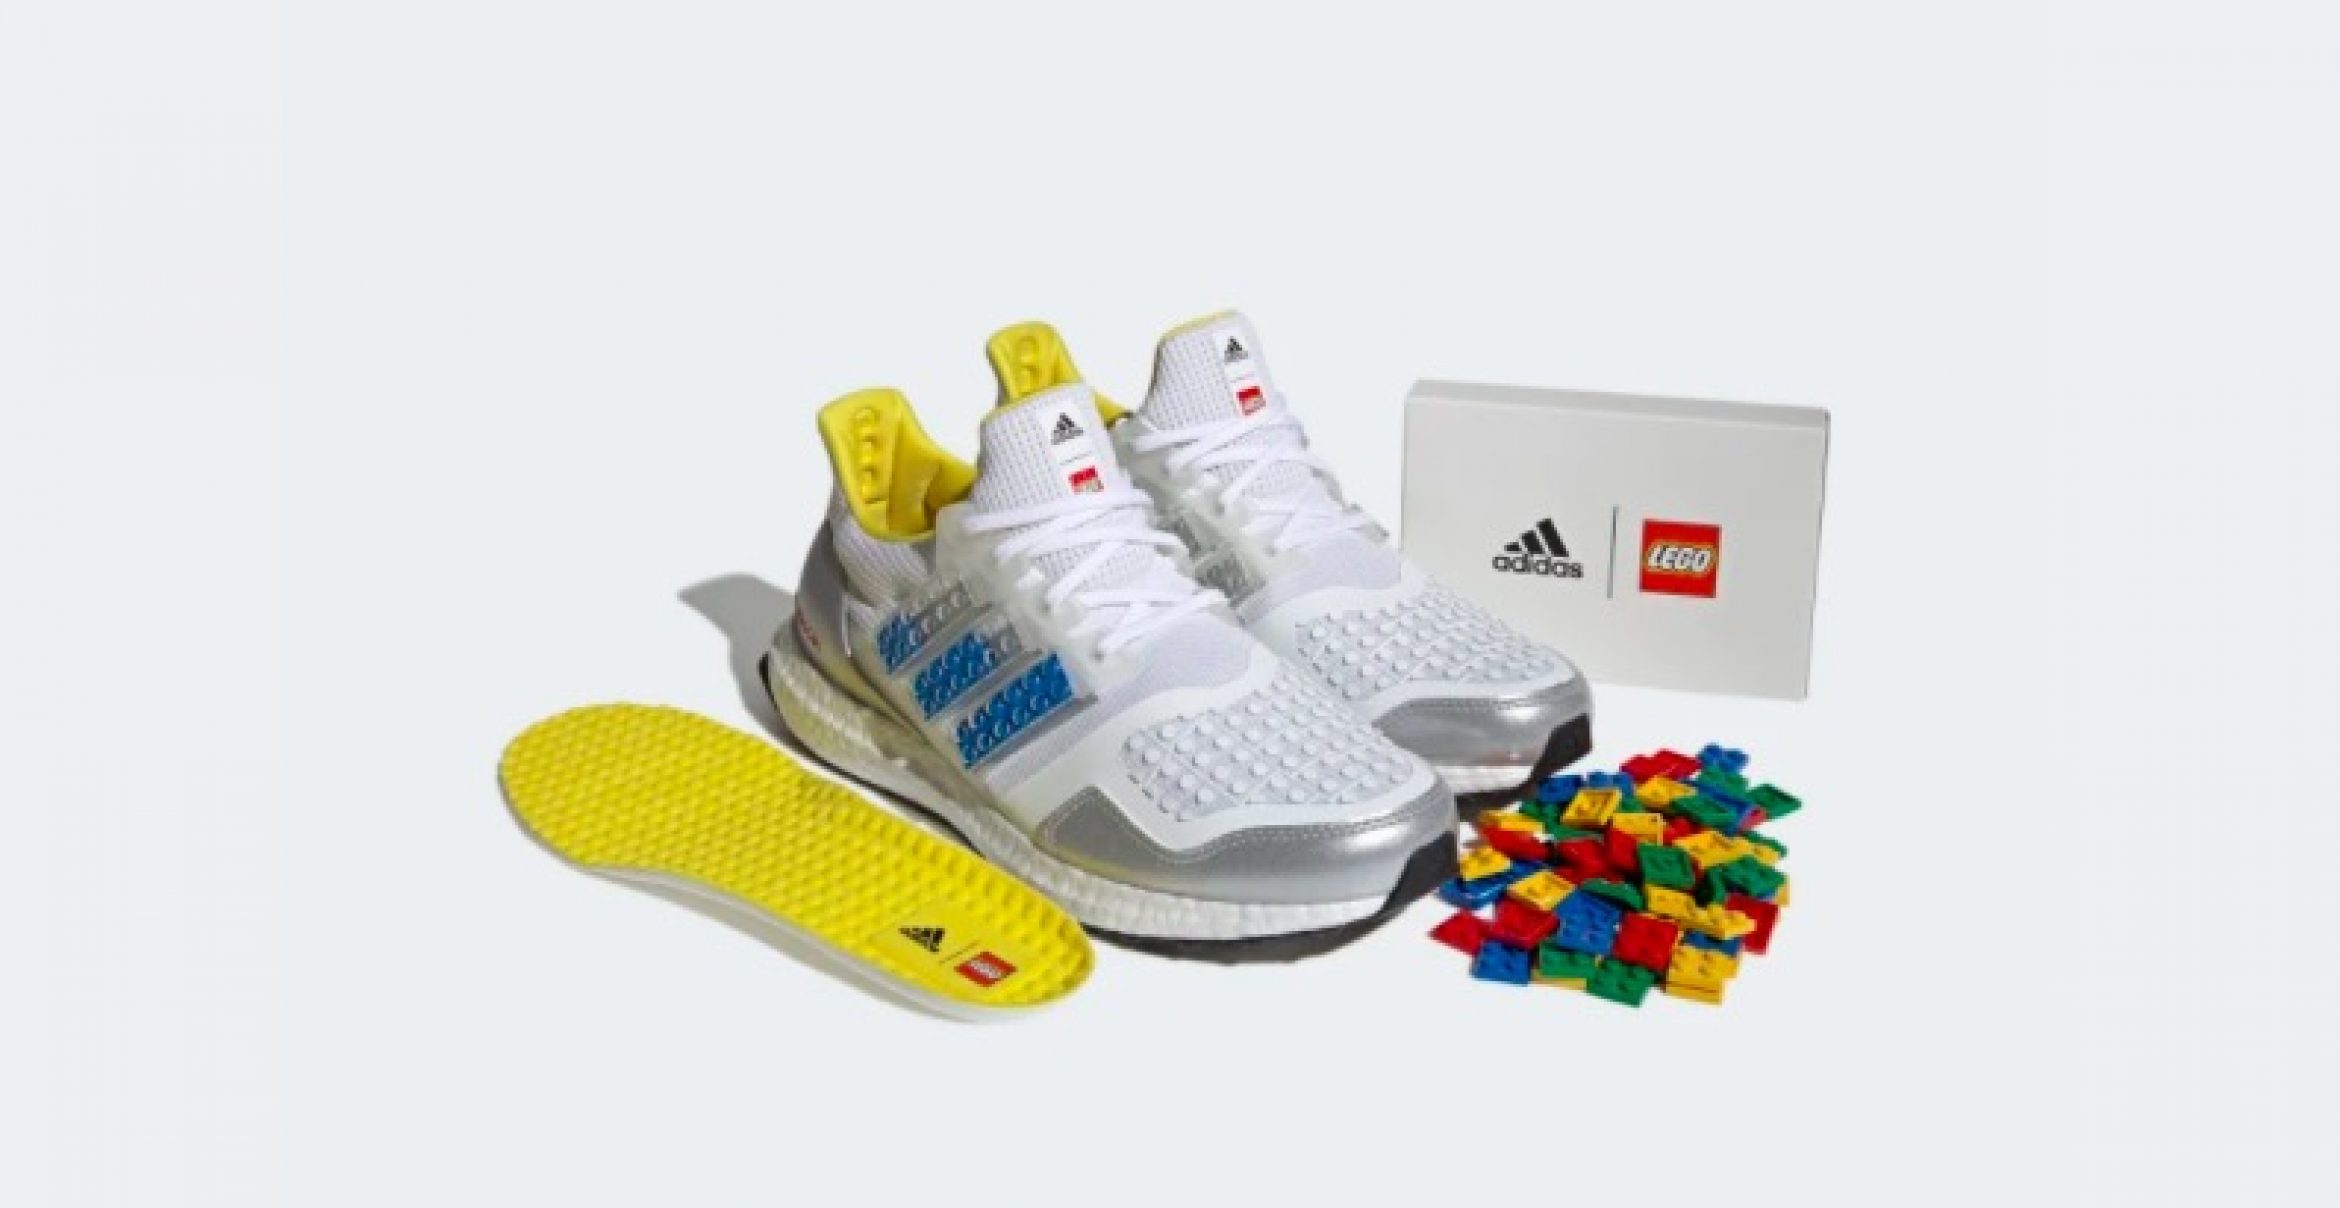 Next-Level-Customize: Diesen Schuh könnt ihr mit Lego-Steinen gestalten